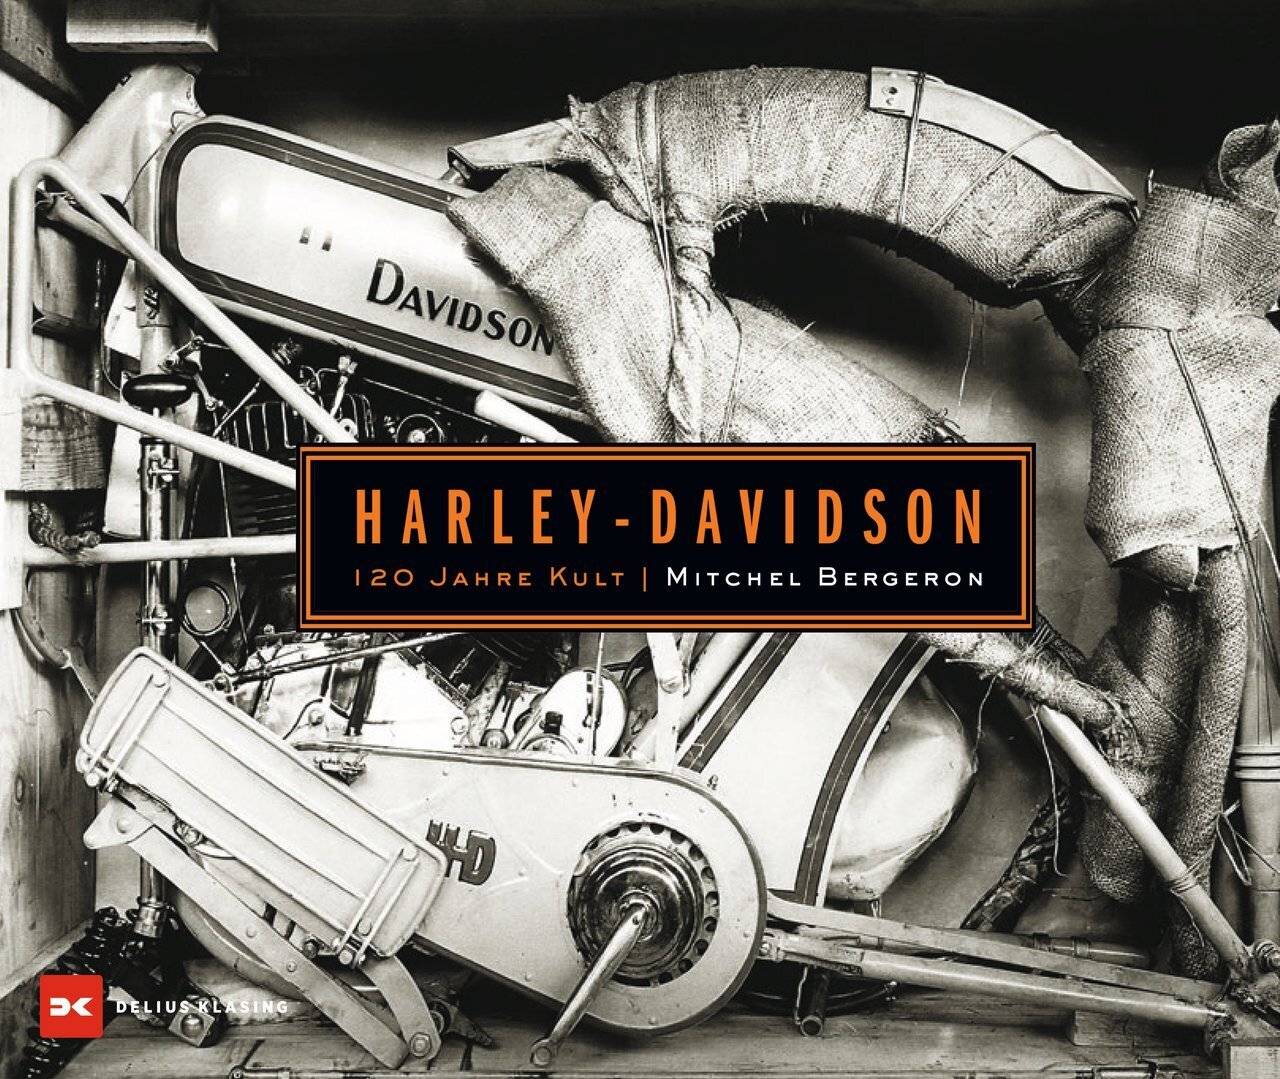 Harley Davidson 120 Jahre Kult